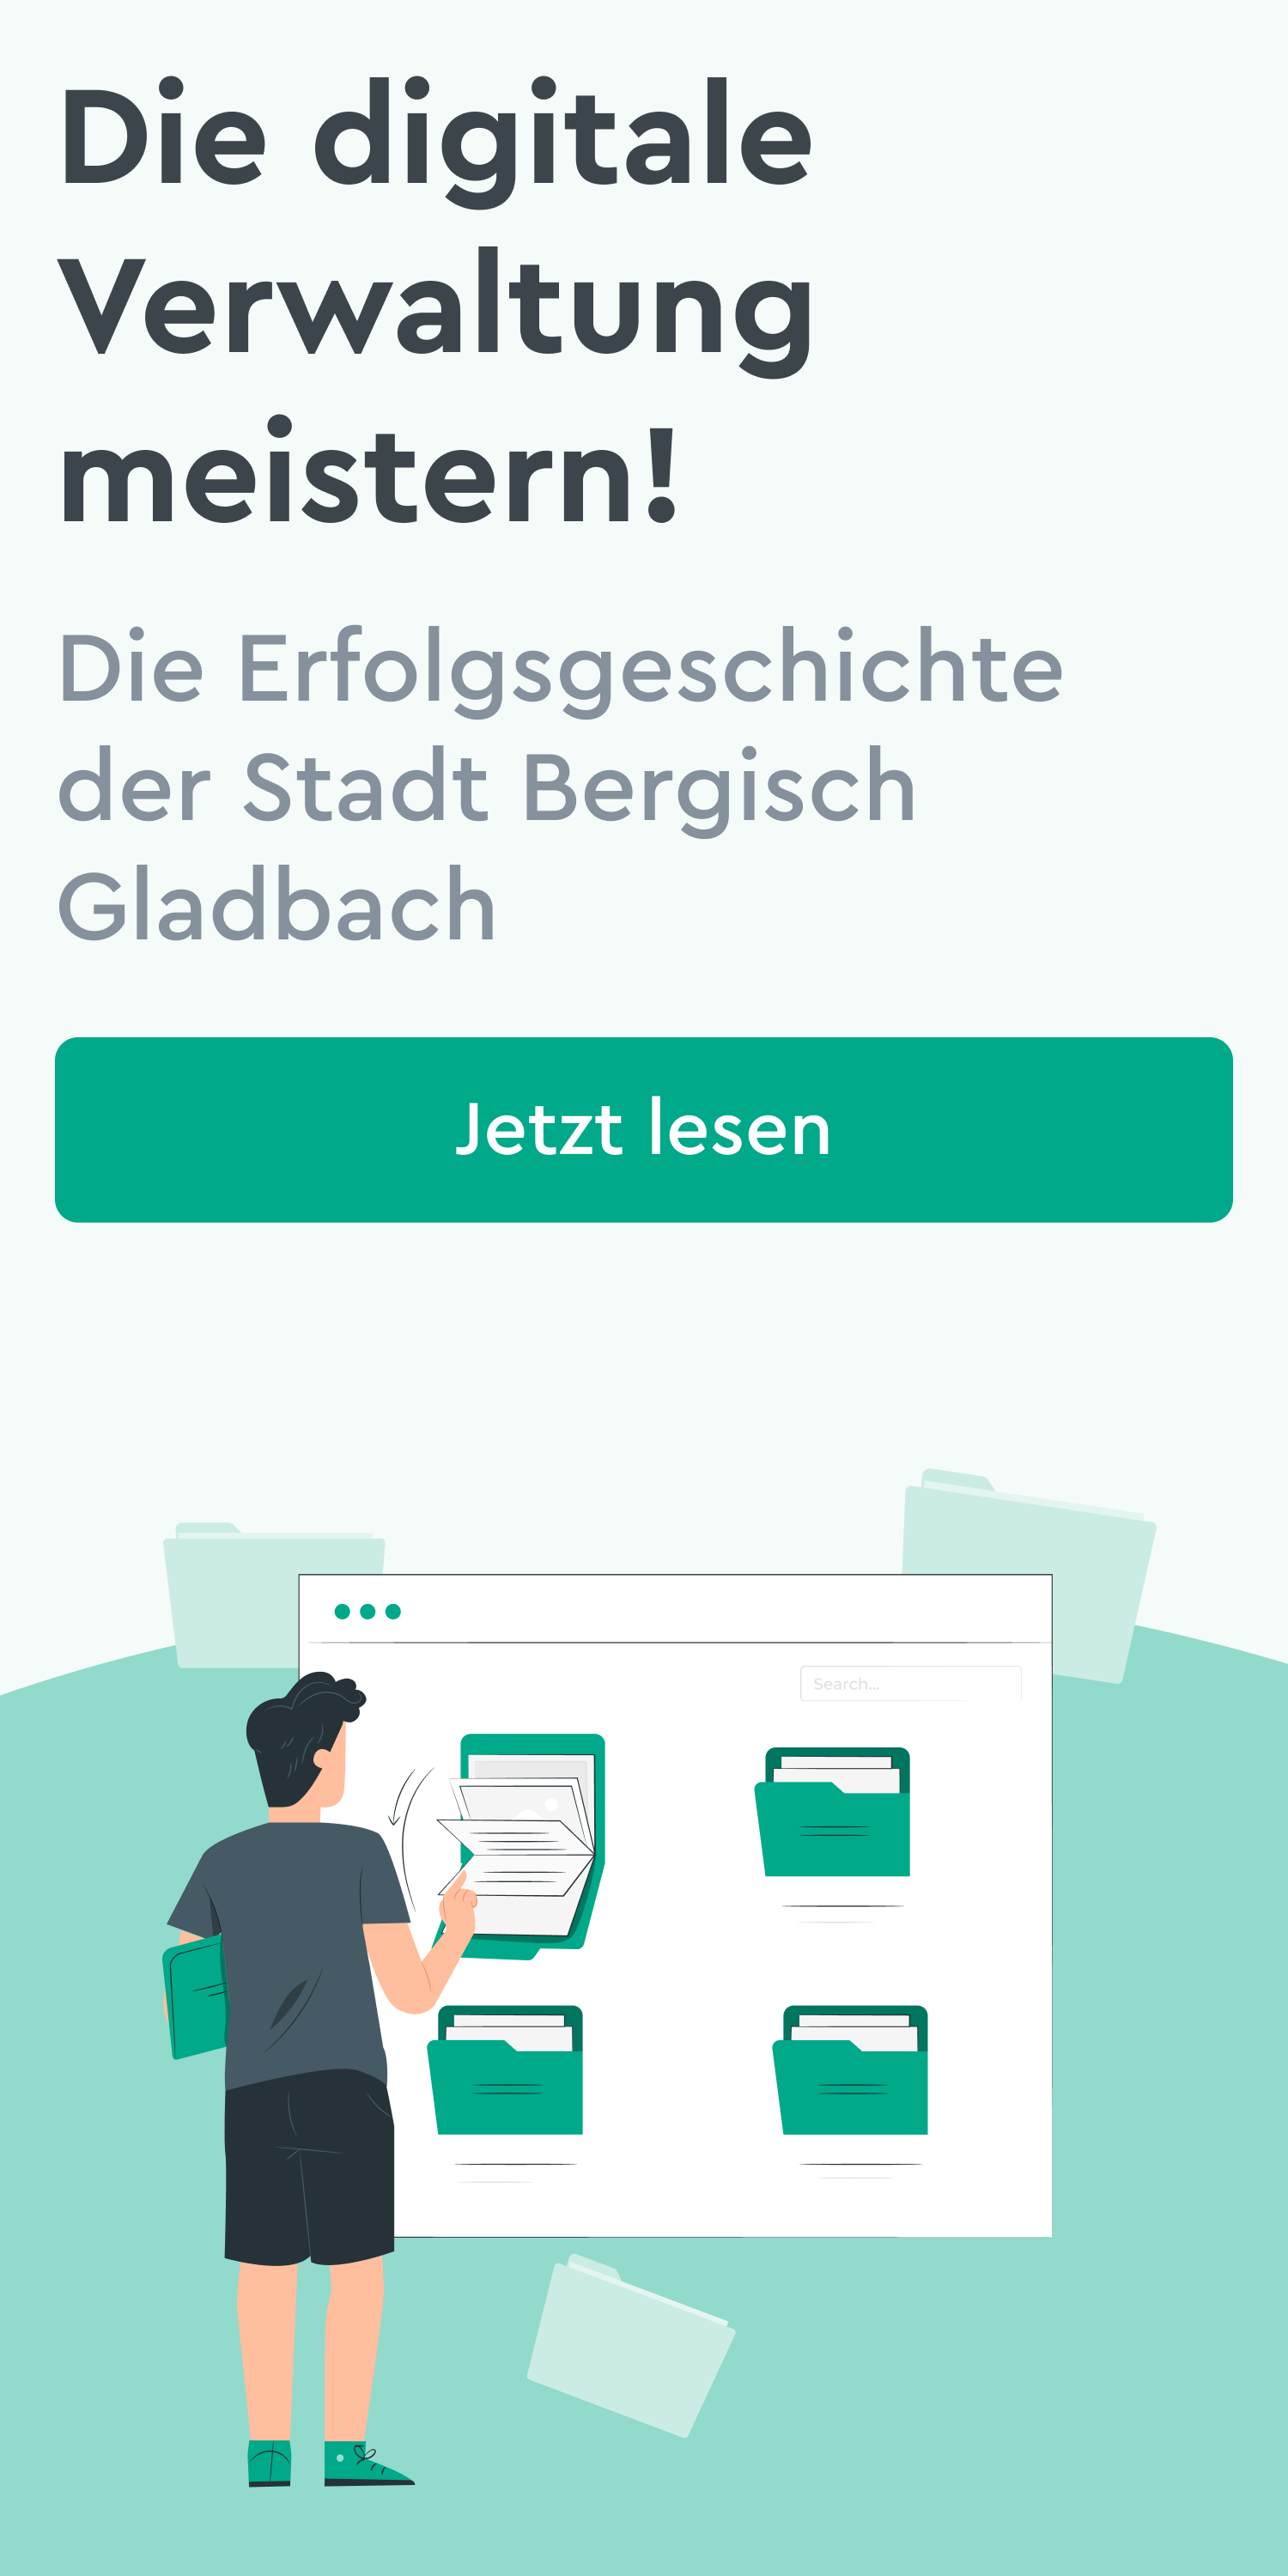 Ein klickbares Bild mit der Aufschrift "Die digitale Verwaltung meistern! Die Erfolgsgeschichte der Stadt Bergisch Gladbach. Jetzt lesen."